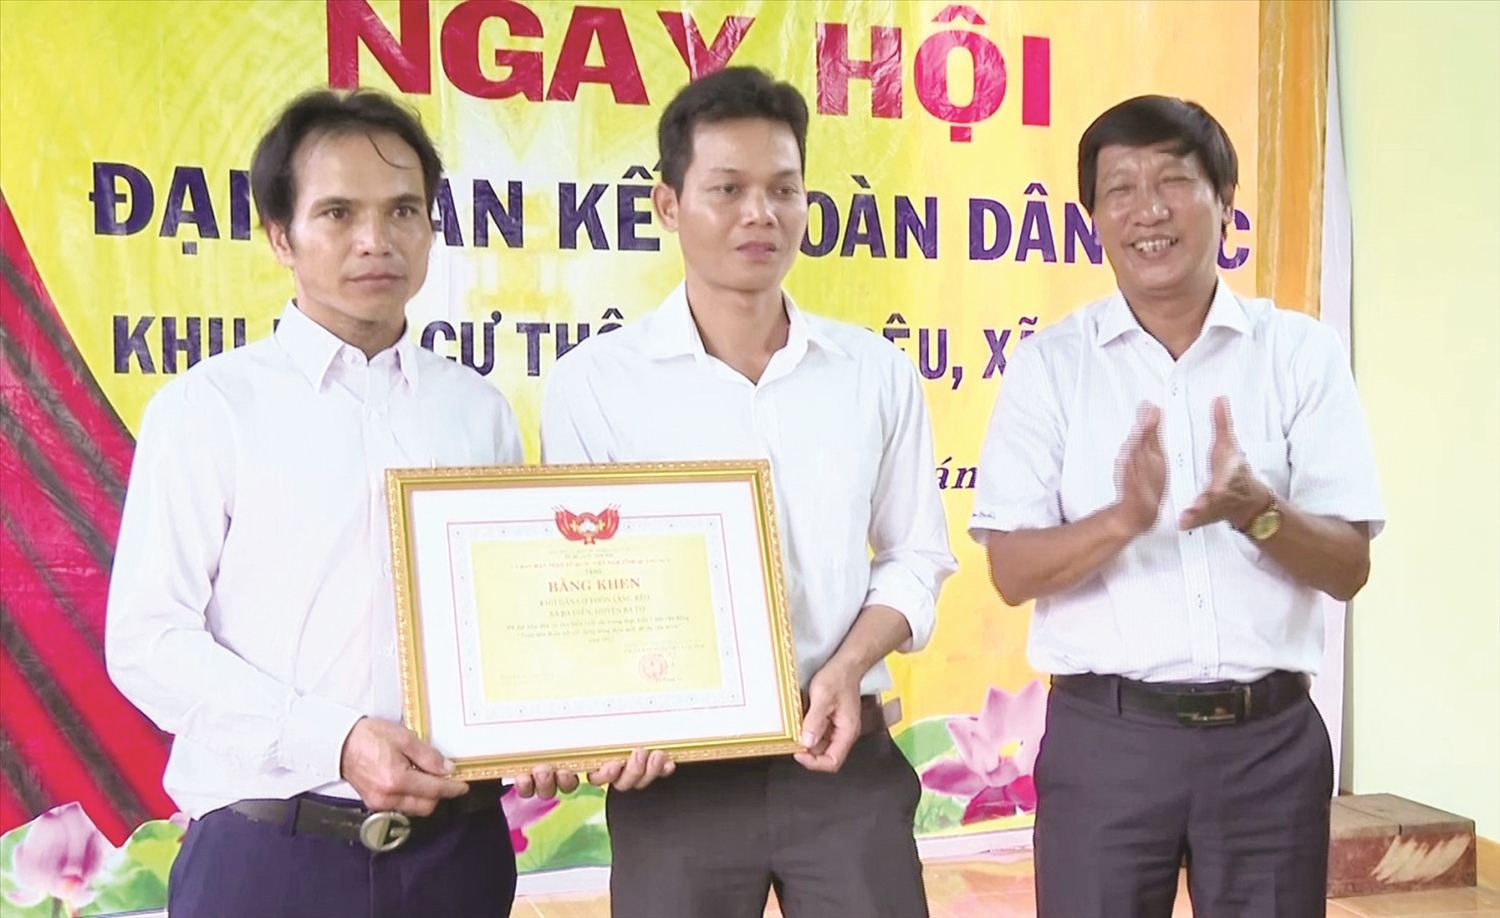 Ủy ban MTTQ Việt Nam tỉnh Quảng Ngãi cũng đã trao Bằng khen công nhận khu dân cư thôn Làng Rêu là khu dân cư tiêu biểu